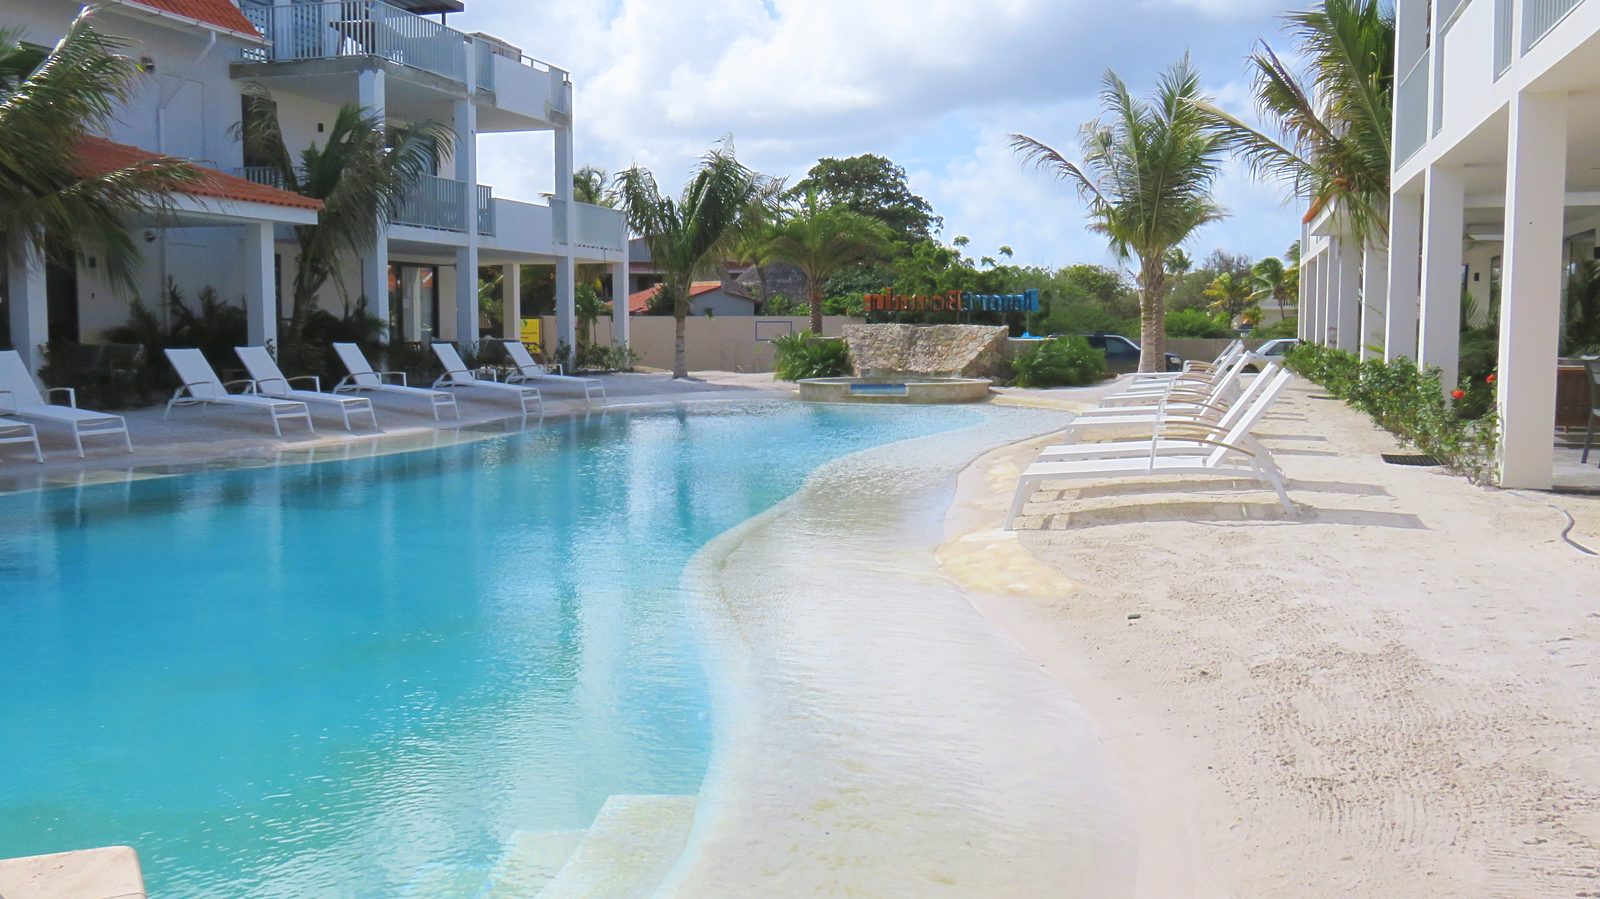 Découvrez la piscine du Resort Bonaire. Cette piscine en bord de plage est l'endroit où vous pourrez vous détendre et profiter du beau temps. Les enfants y passeront également un super moment.